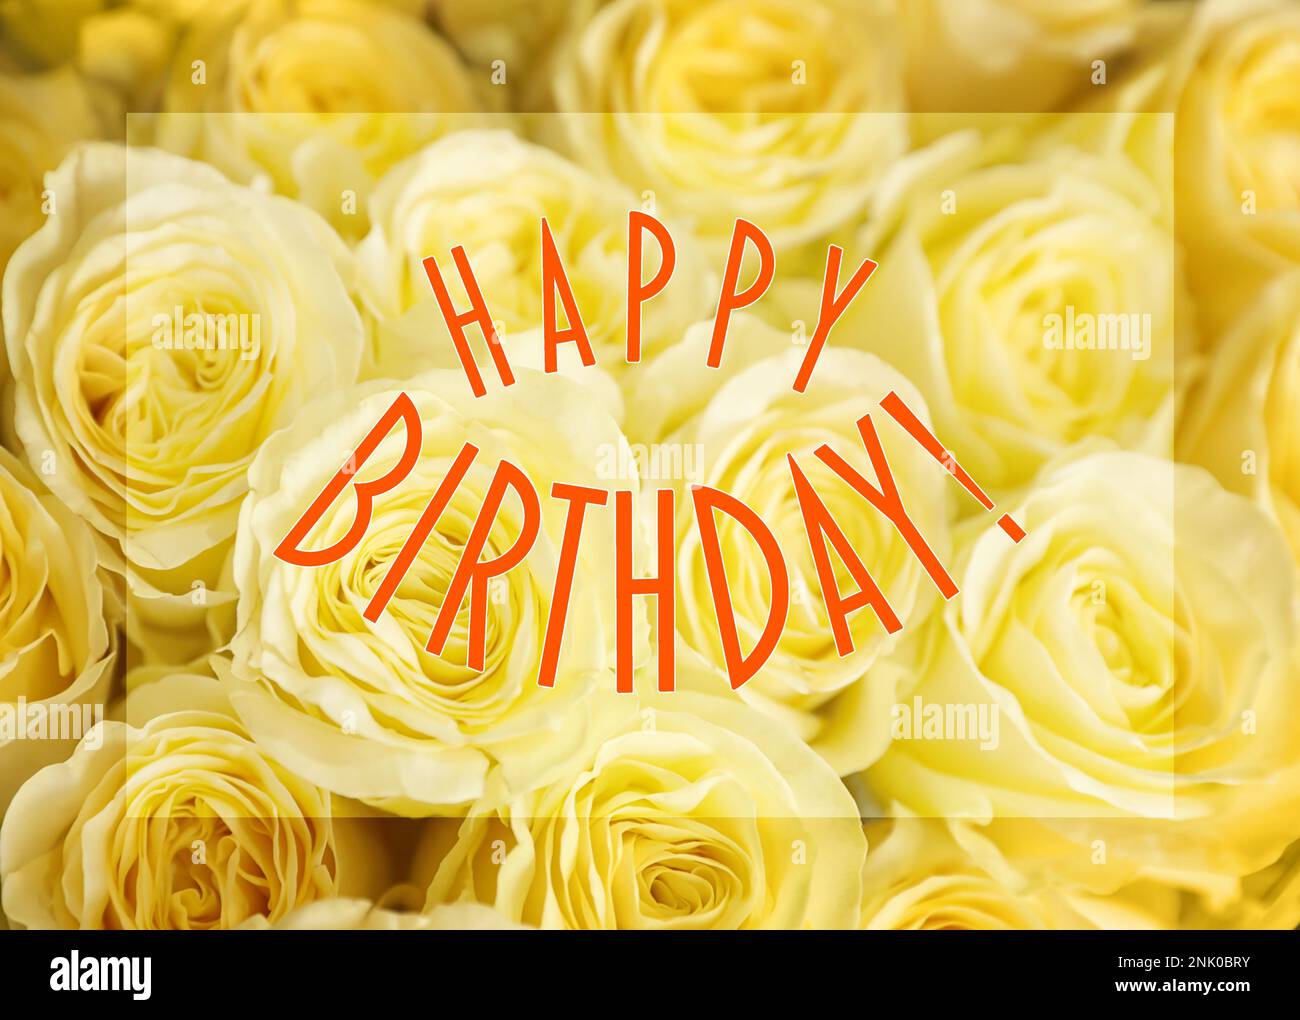 Happy Birthday! beautiful flowers bouquet Stock Photo - Alamy